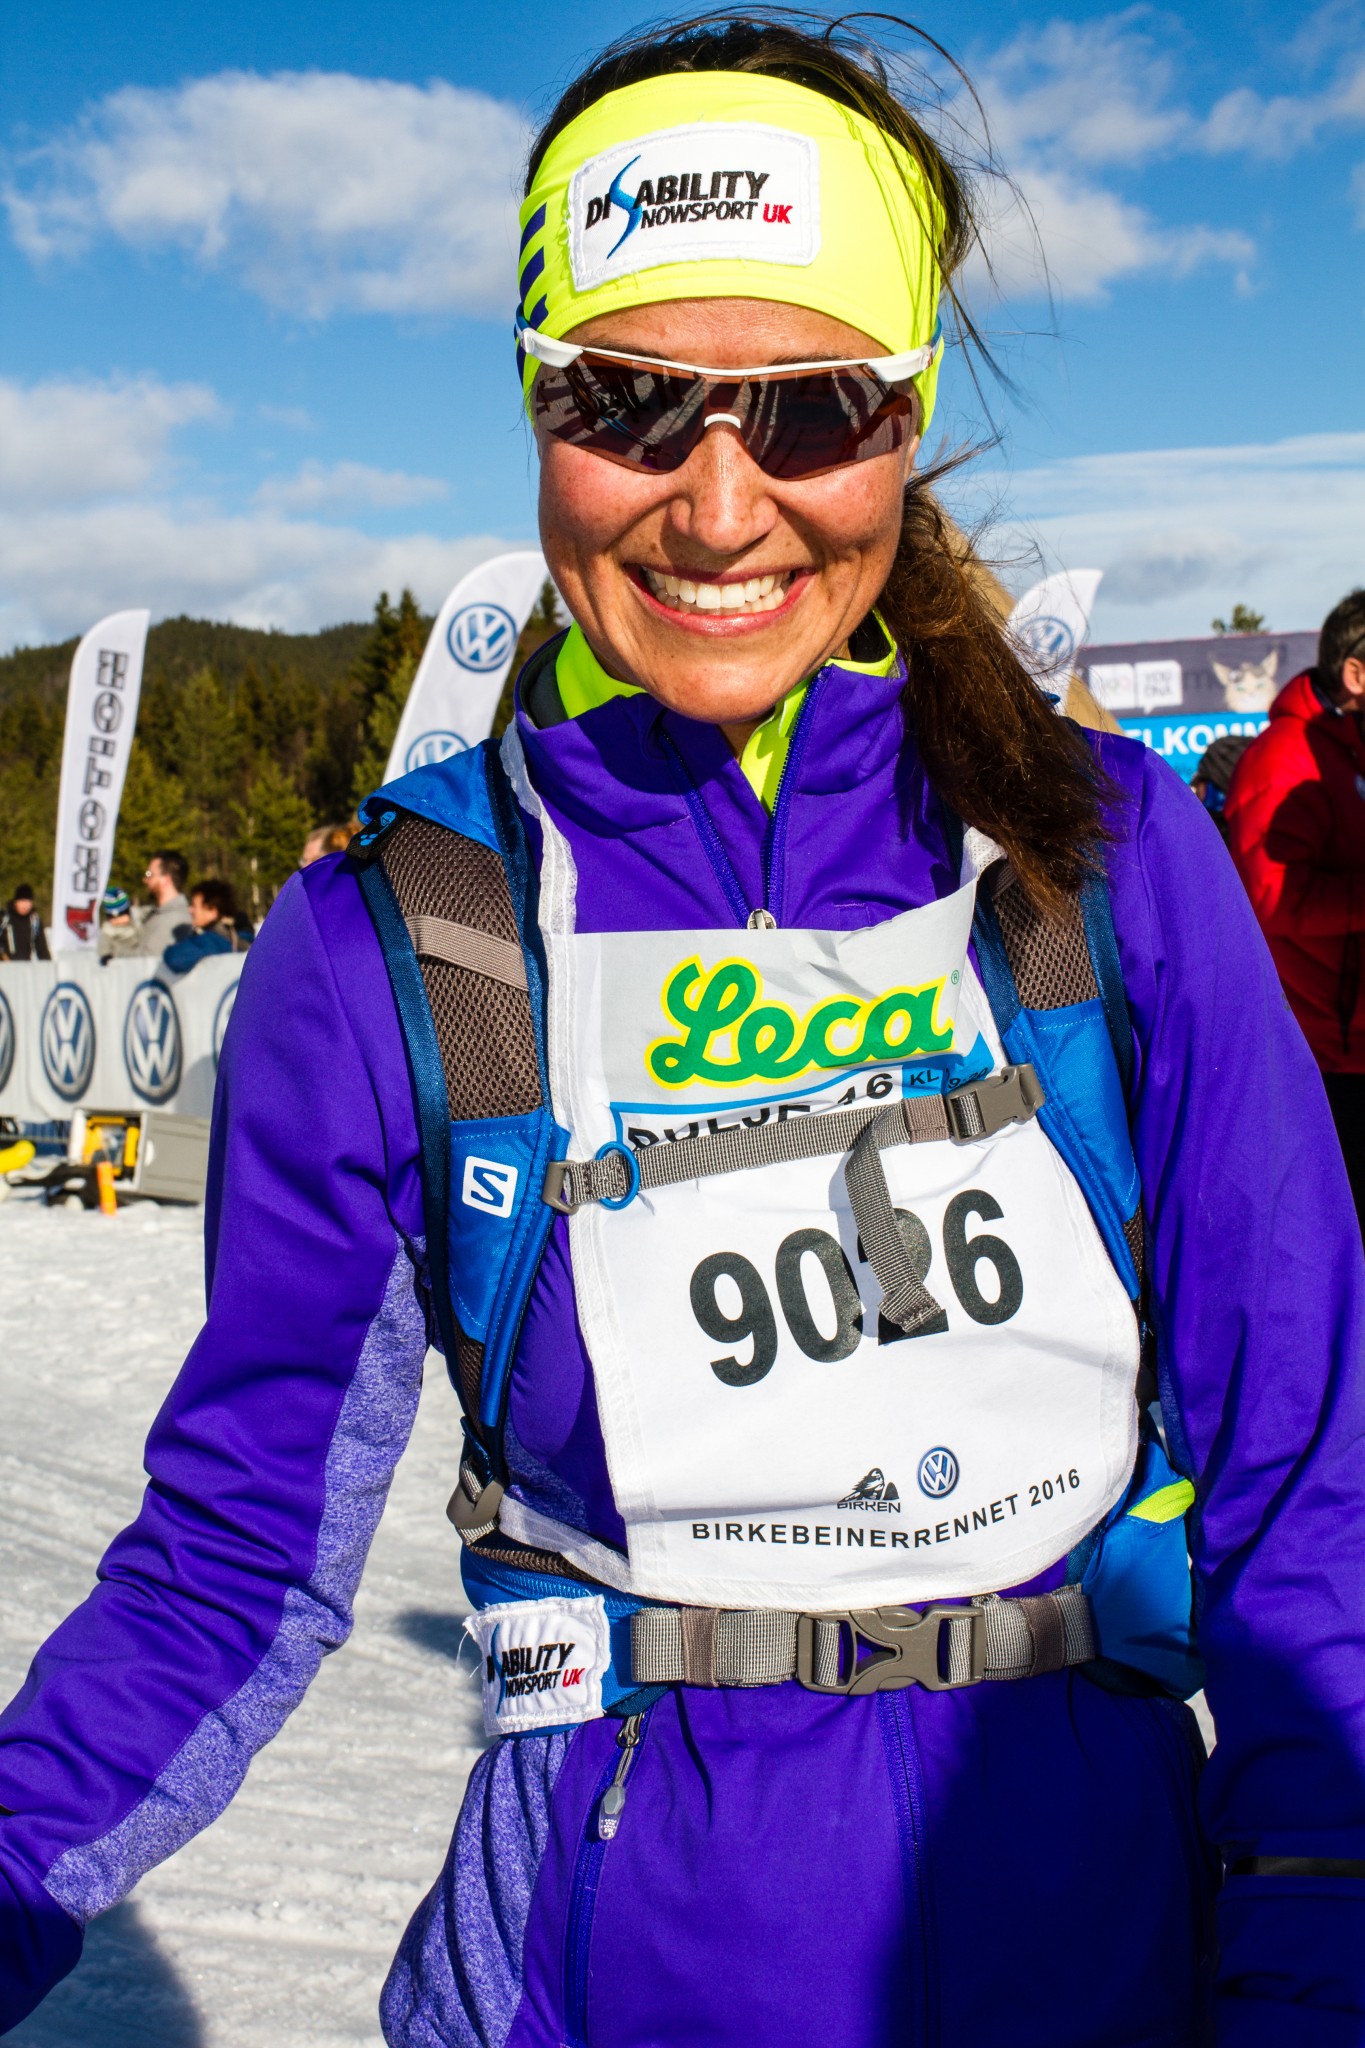 Pippa Middleton in 54km Ski Race for Charity